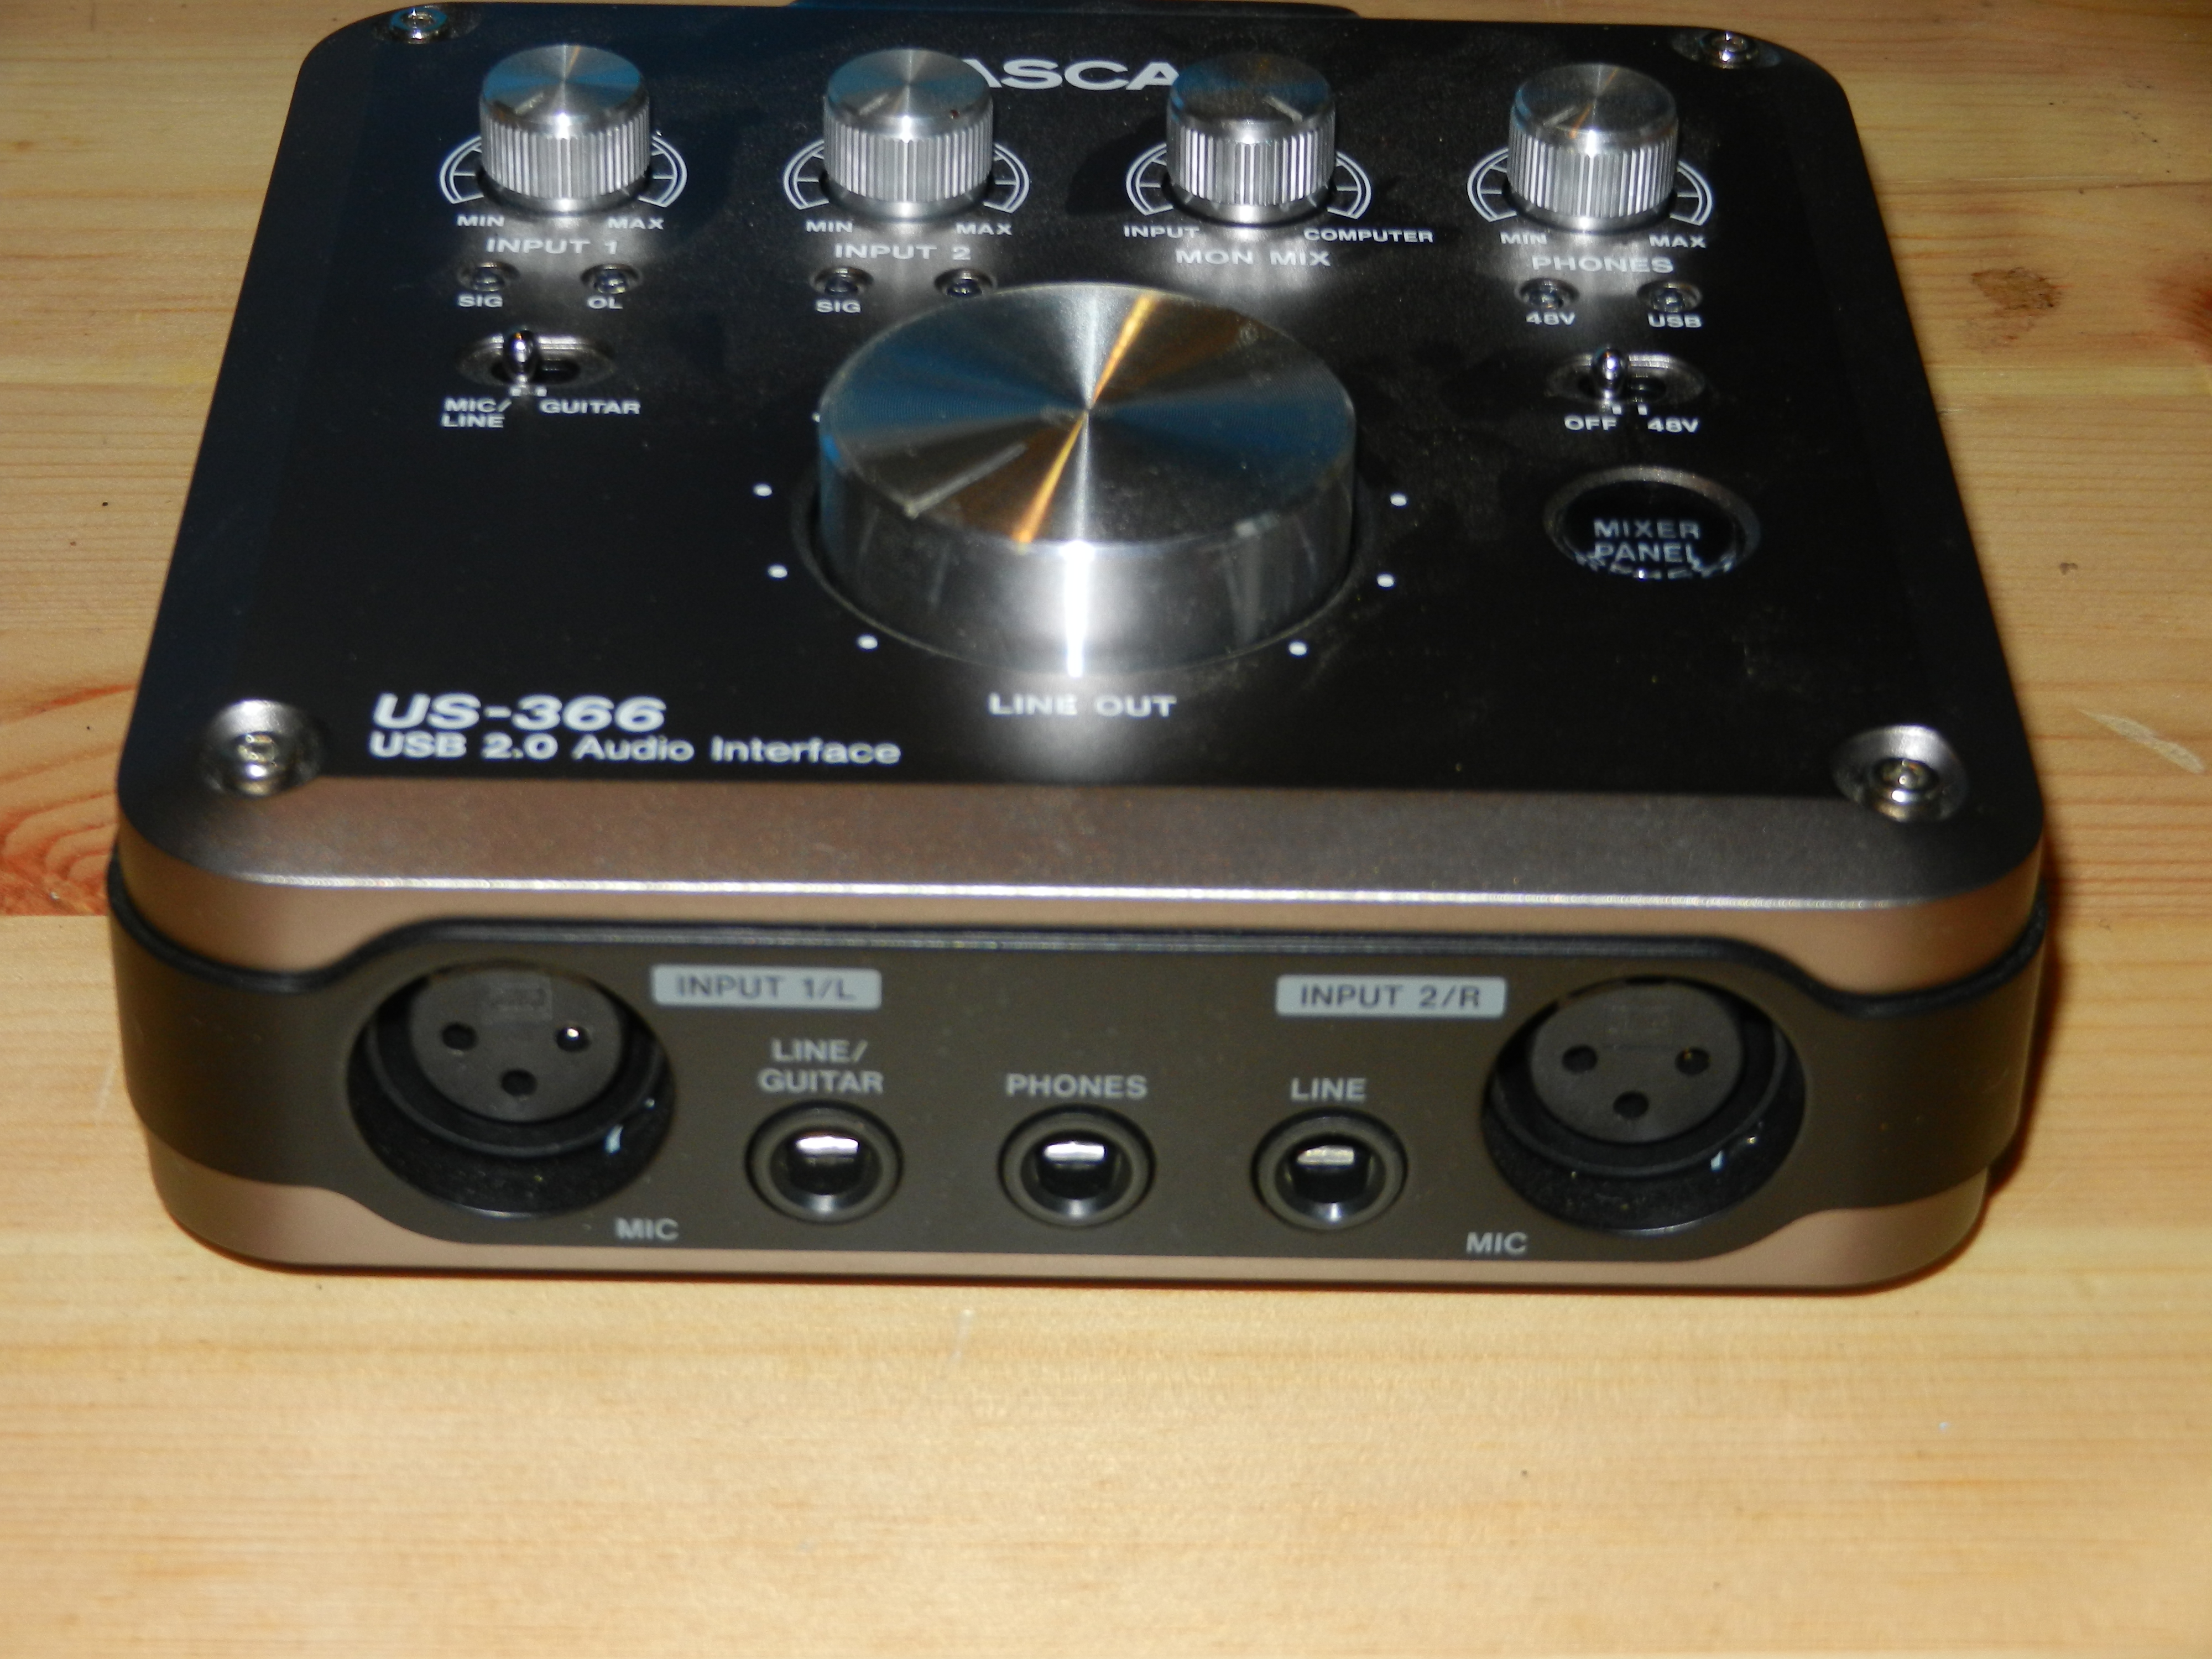 US-366 - Tascam US-366 - Audiofanzine